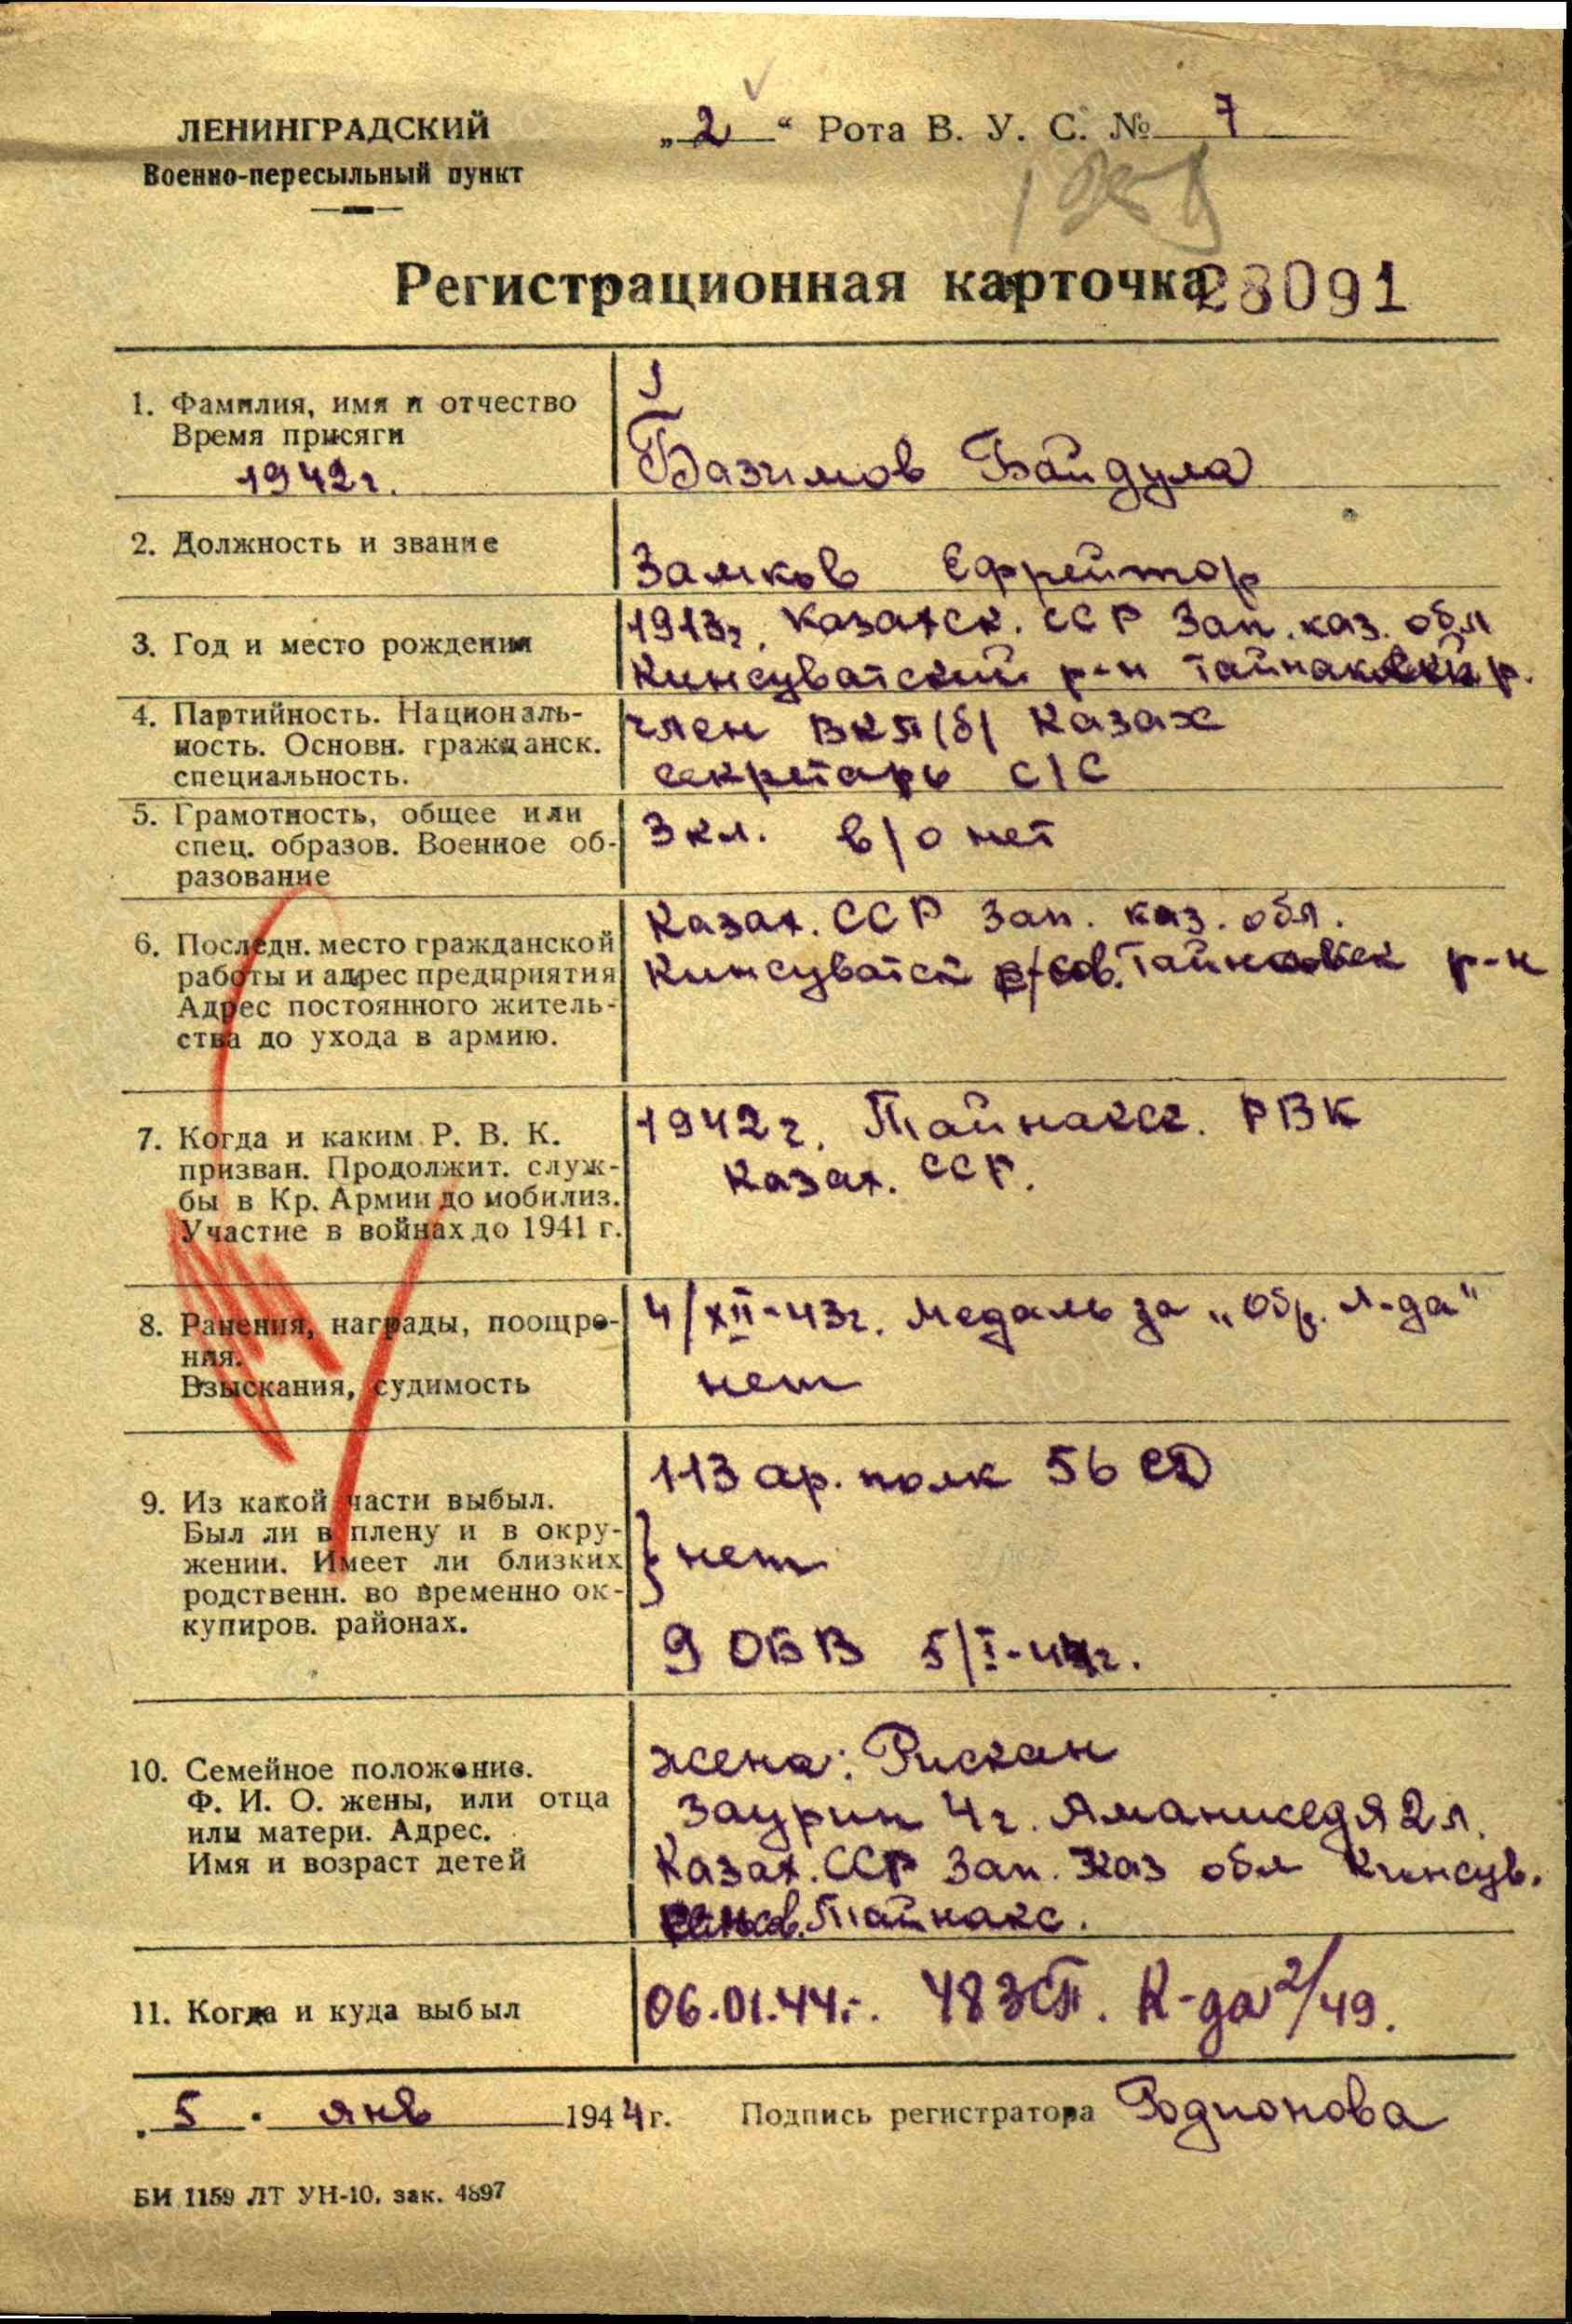 Информация из Ленинградского ВПП. Регистрационная карточка военнослужащего